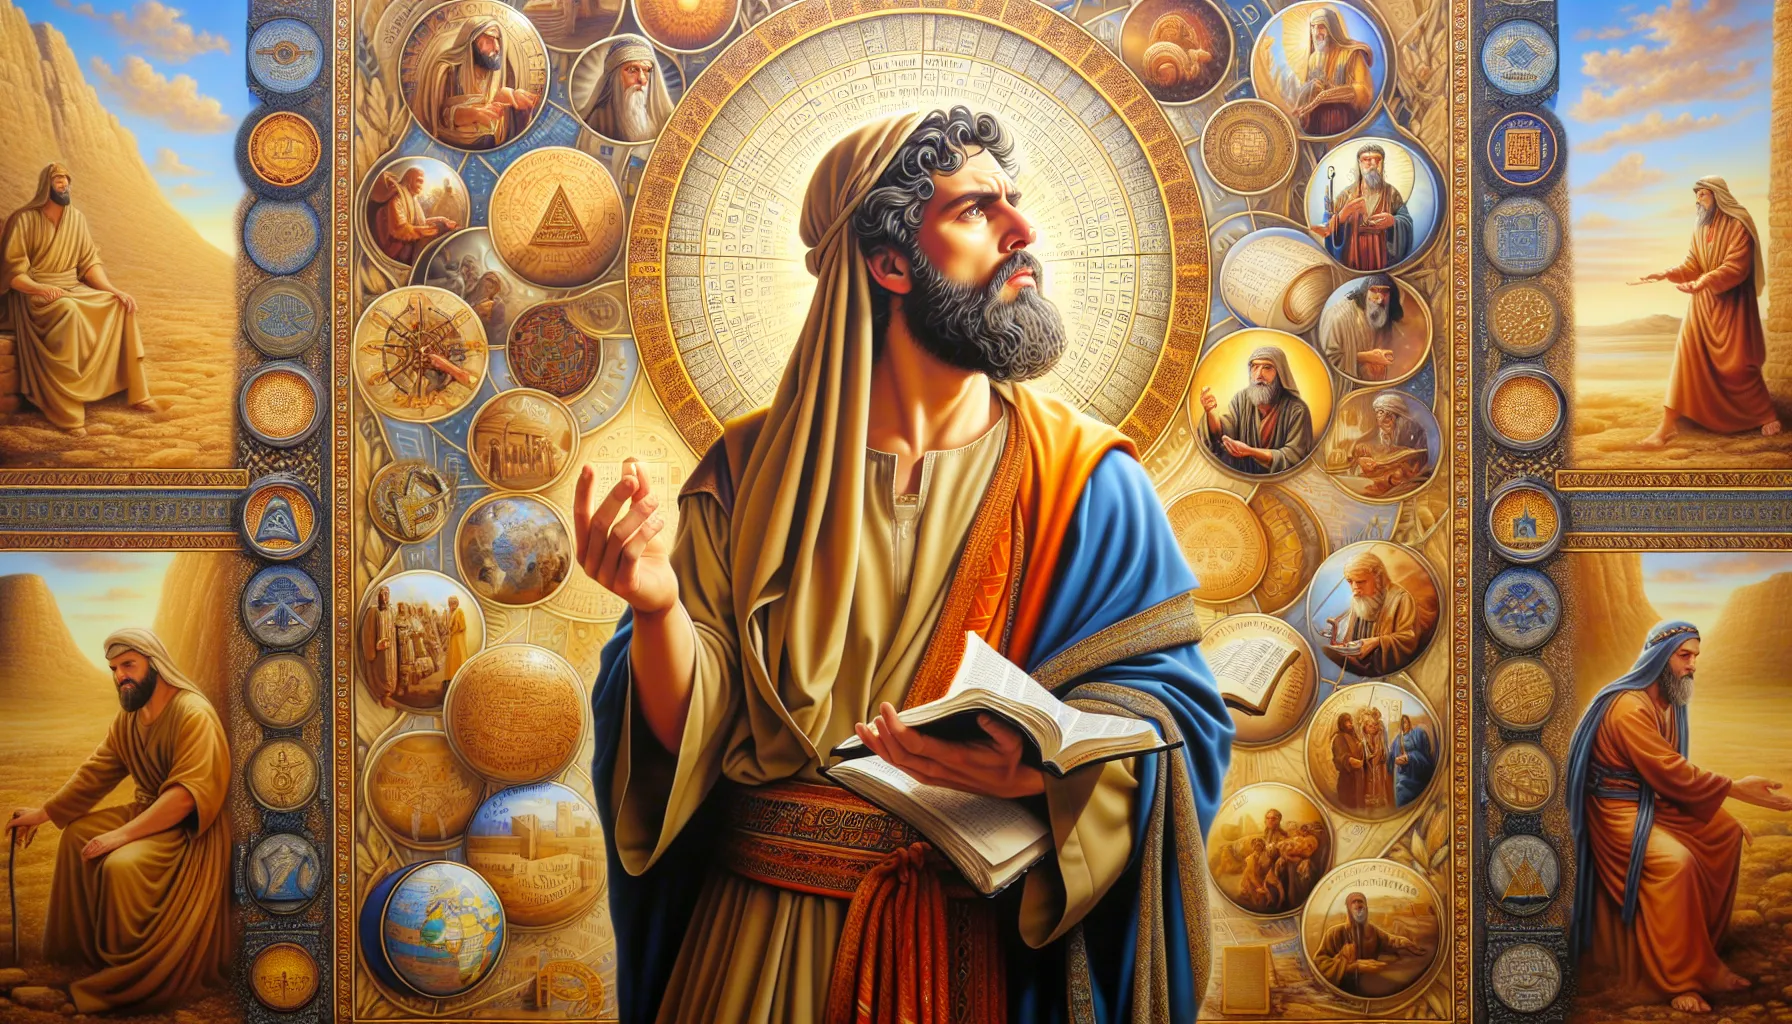 Imagen de Saúl en la Biblia representando lecciones de vida y crecimiento espiritual